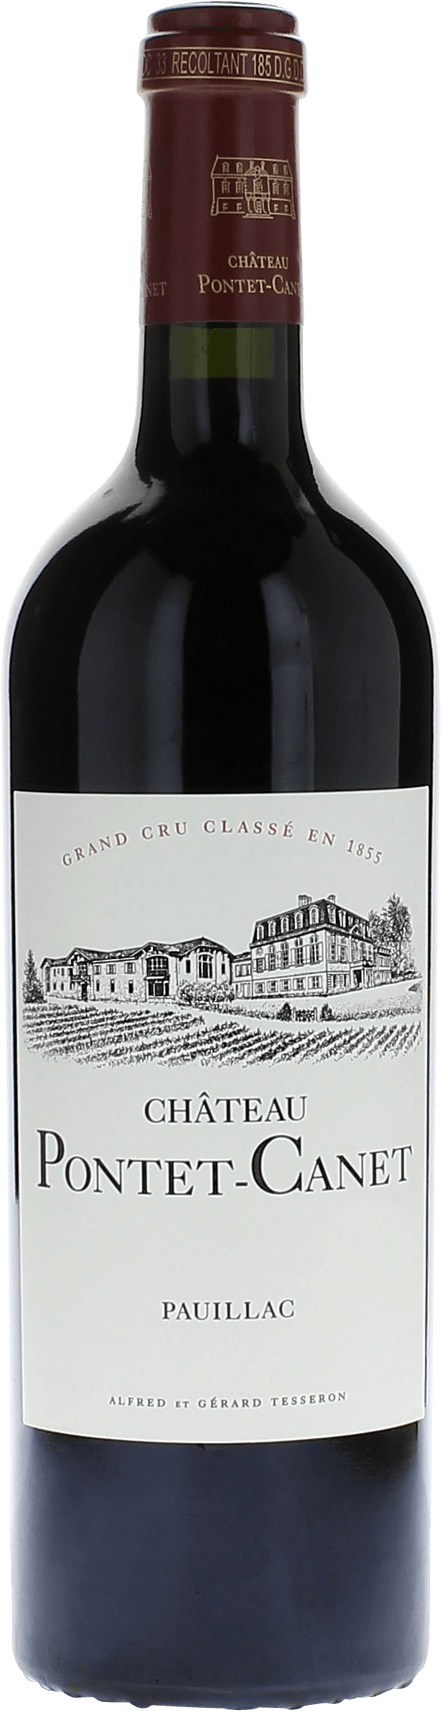 Pontet canet 1987 5me Grand cru class Pauillac, Bordeaux rouge